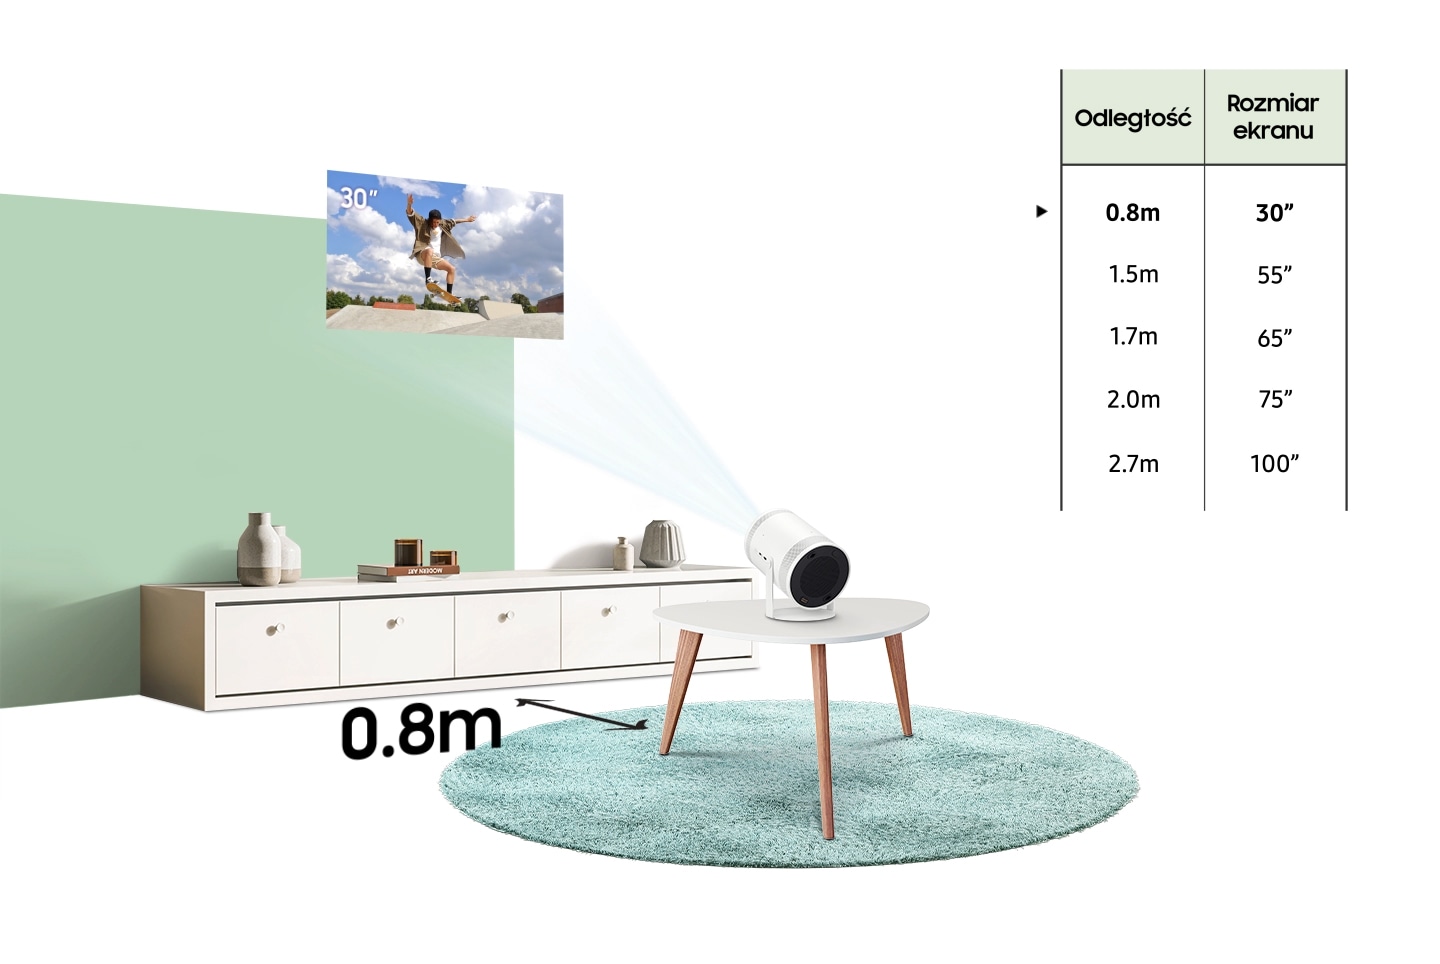 The Freestyle znajduje się 2,7 metra od ściany, wyświetlając treści na 100-calowym ekranie. Tabela przedstawia odległość od ściany w zależności od rozmiaru ekranu. 0,8 metra to 30 cali. 1,5 metra to 55 cali. 1,7 metra to 65 cali. 2,0 metry to 75 cali. 2,7 metra to 100 cali.